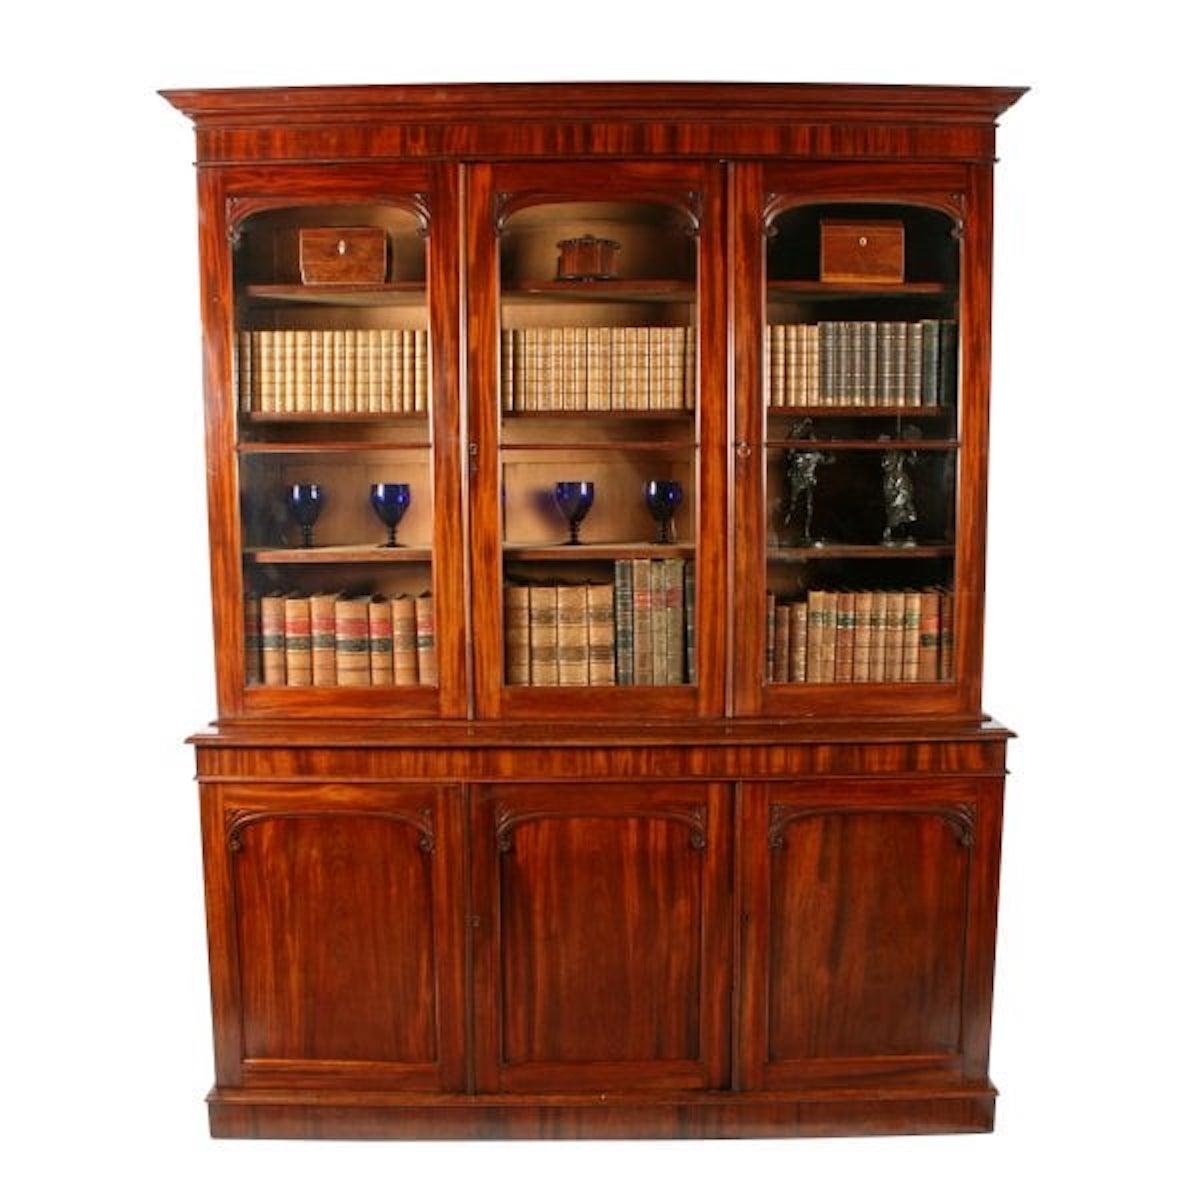 Viktorianisches Mahagoni-Bücherregal mit drei Türen

Ein Mitte des 19. Jahrhunderts viktorianisches Mahagoni-Bücherregal mit drei Türen.

Das Bücherregal hat oben drei verglaste Türen mit Sprossenverglasung und Rollendekoration an jeder